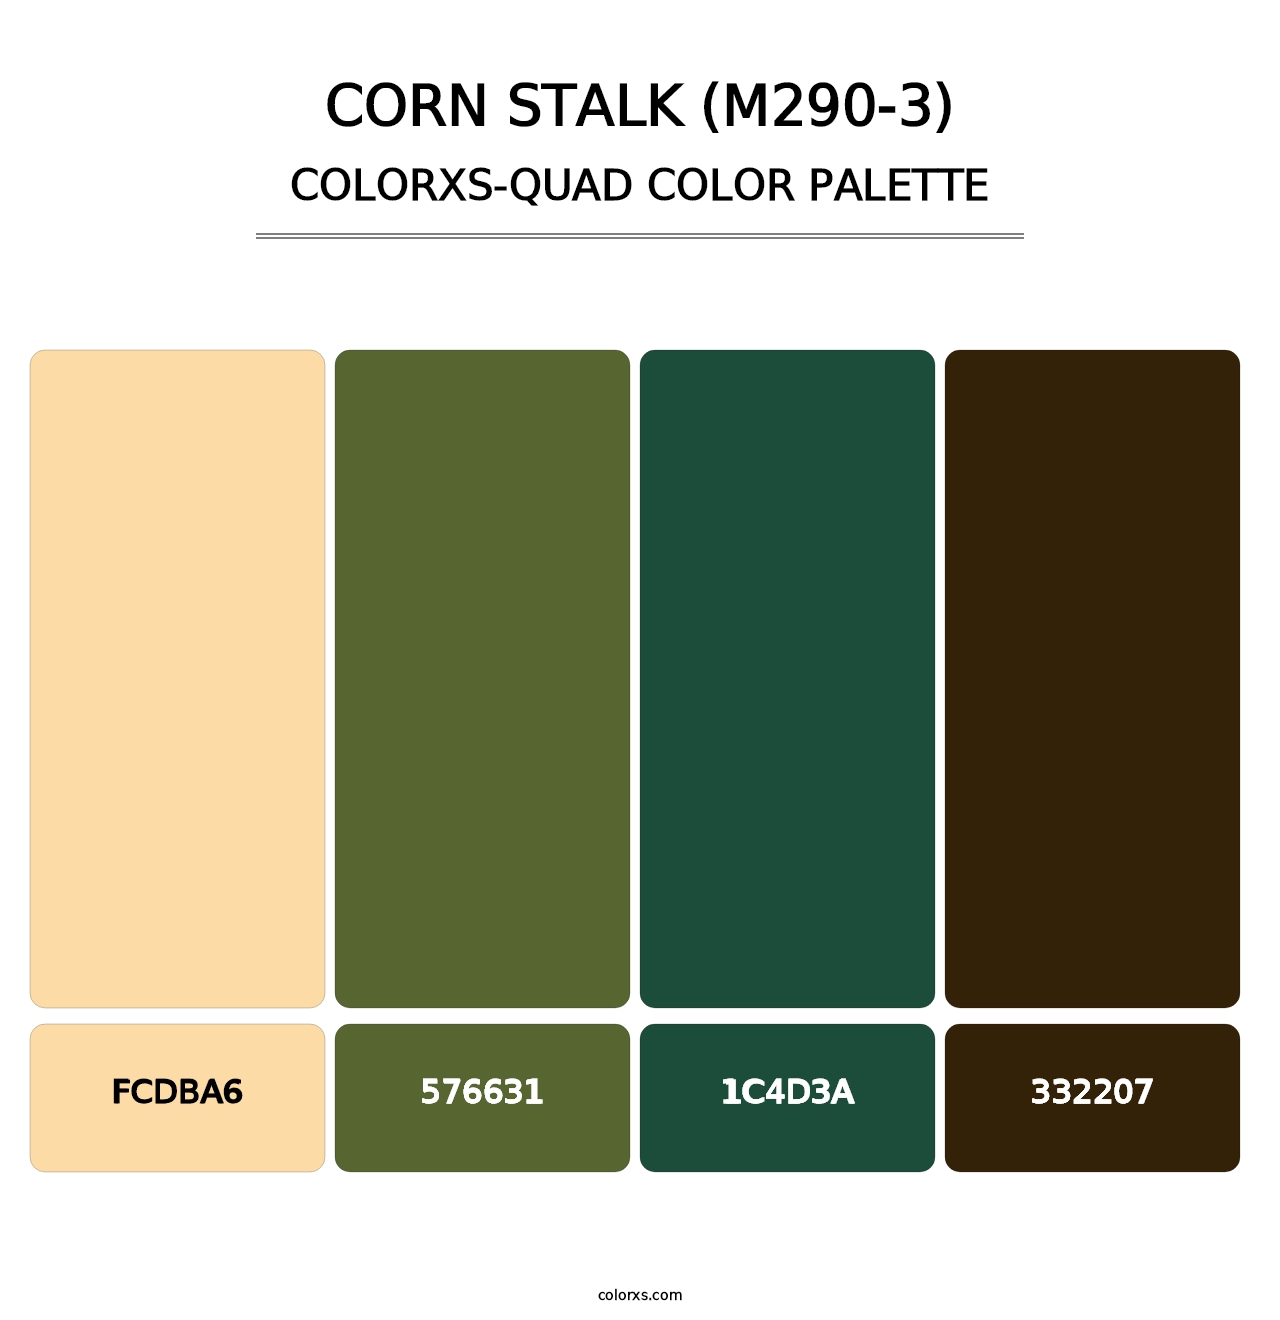 Corn Stalk (M290-3) - Colorxs Quad Palette